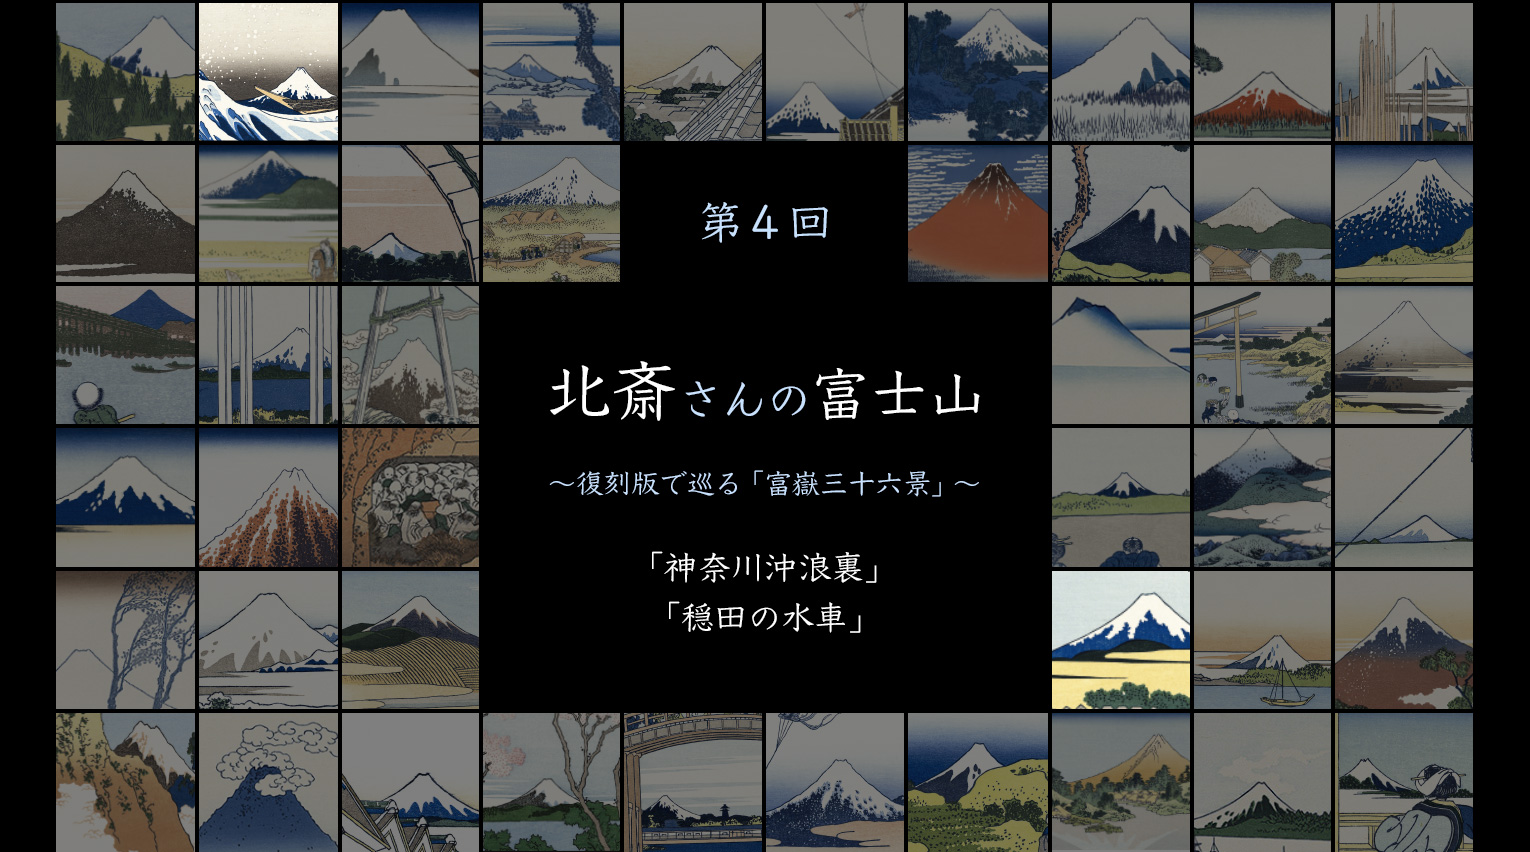 北斎さんの富士山 〜復刻版で巡る「富嶽三十六景」〜 (4)【PR 